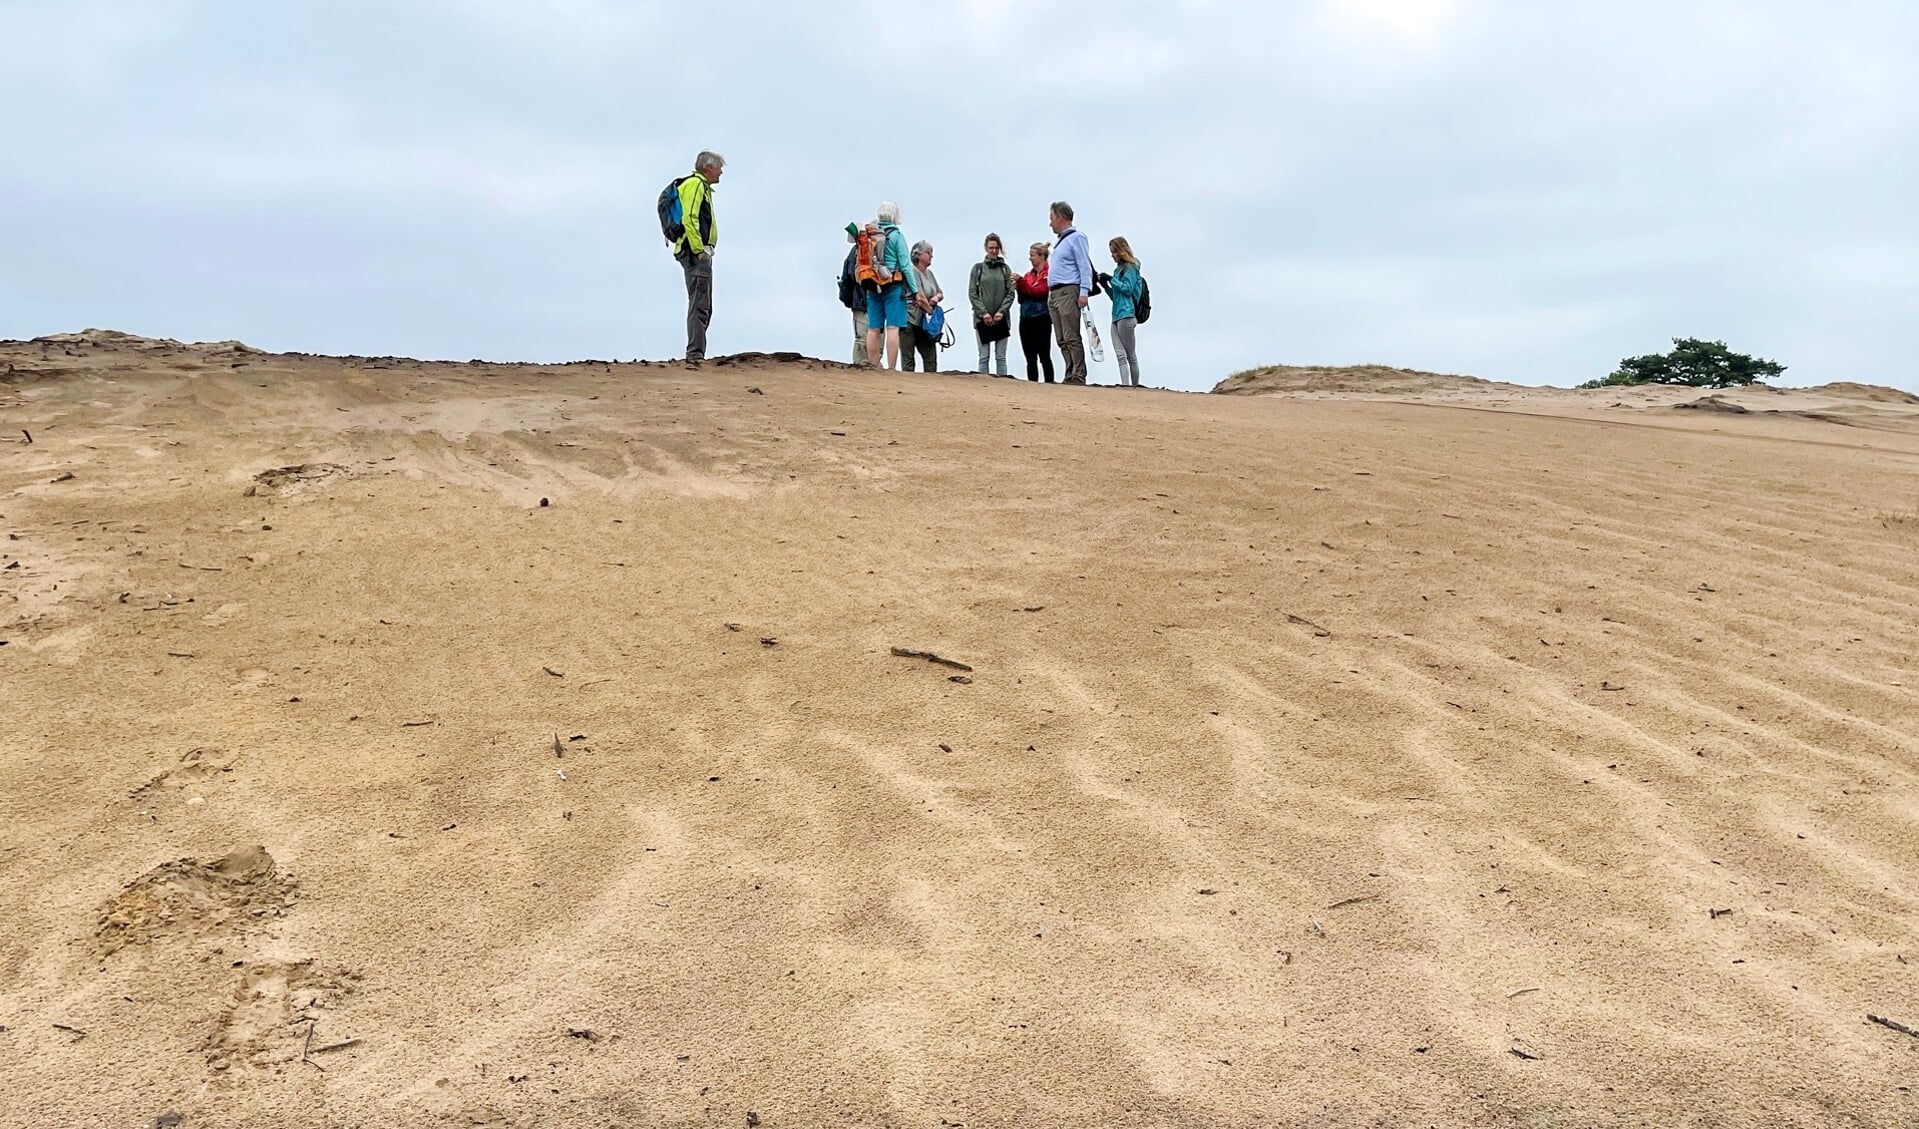 Praktijkles natuurgidsen op het zand bij 't Bluk.